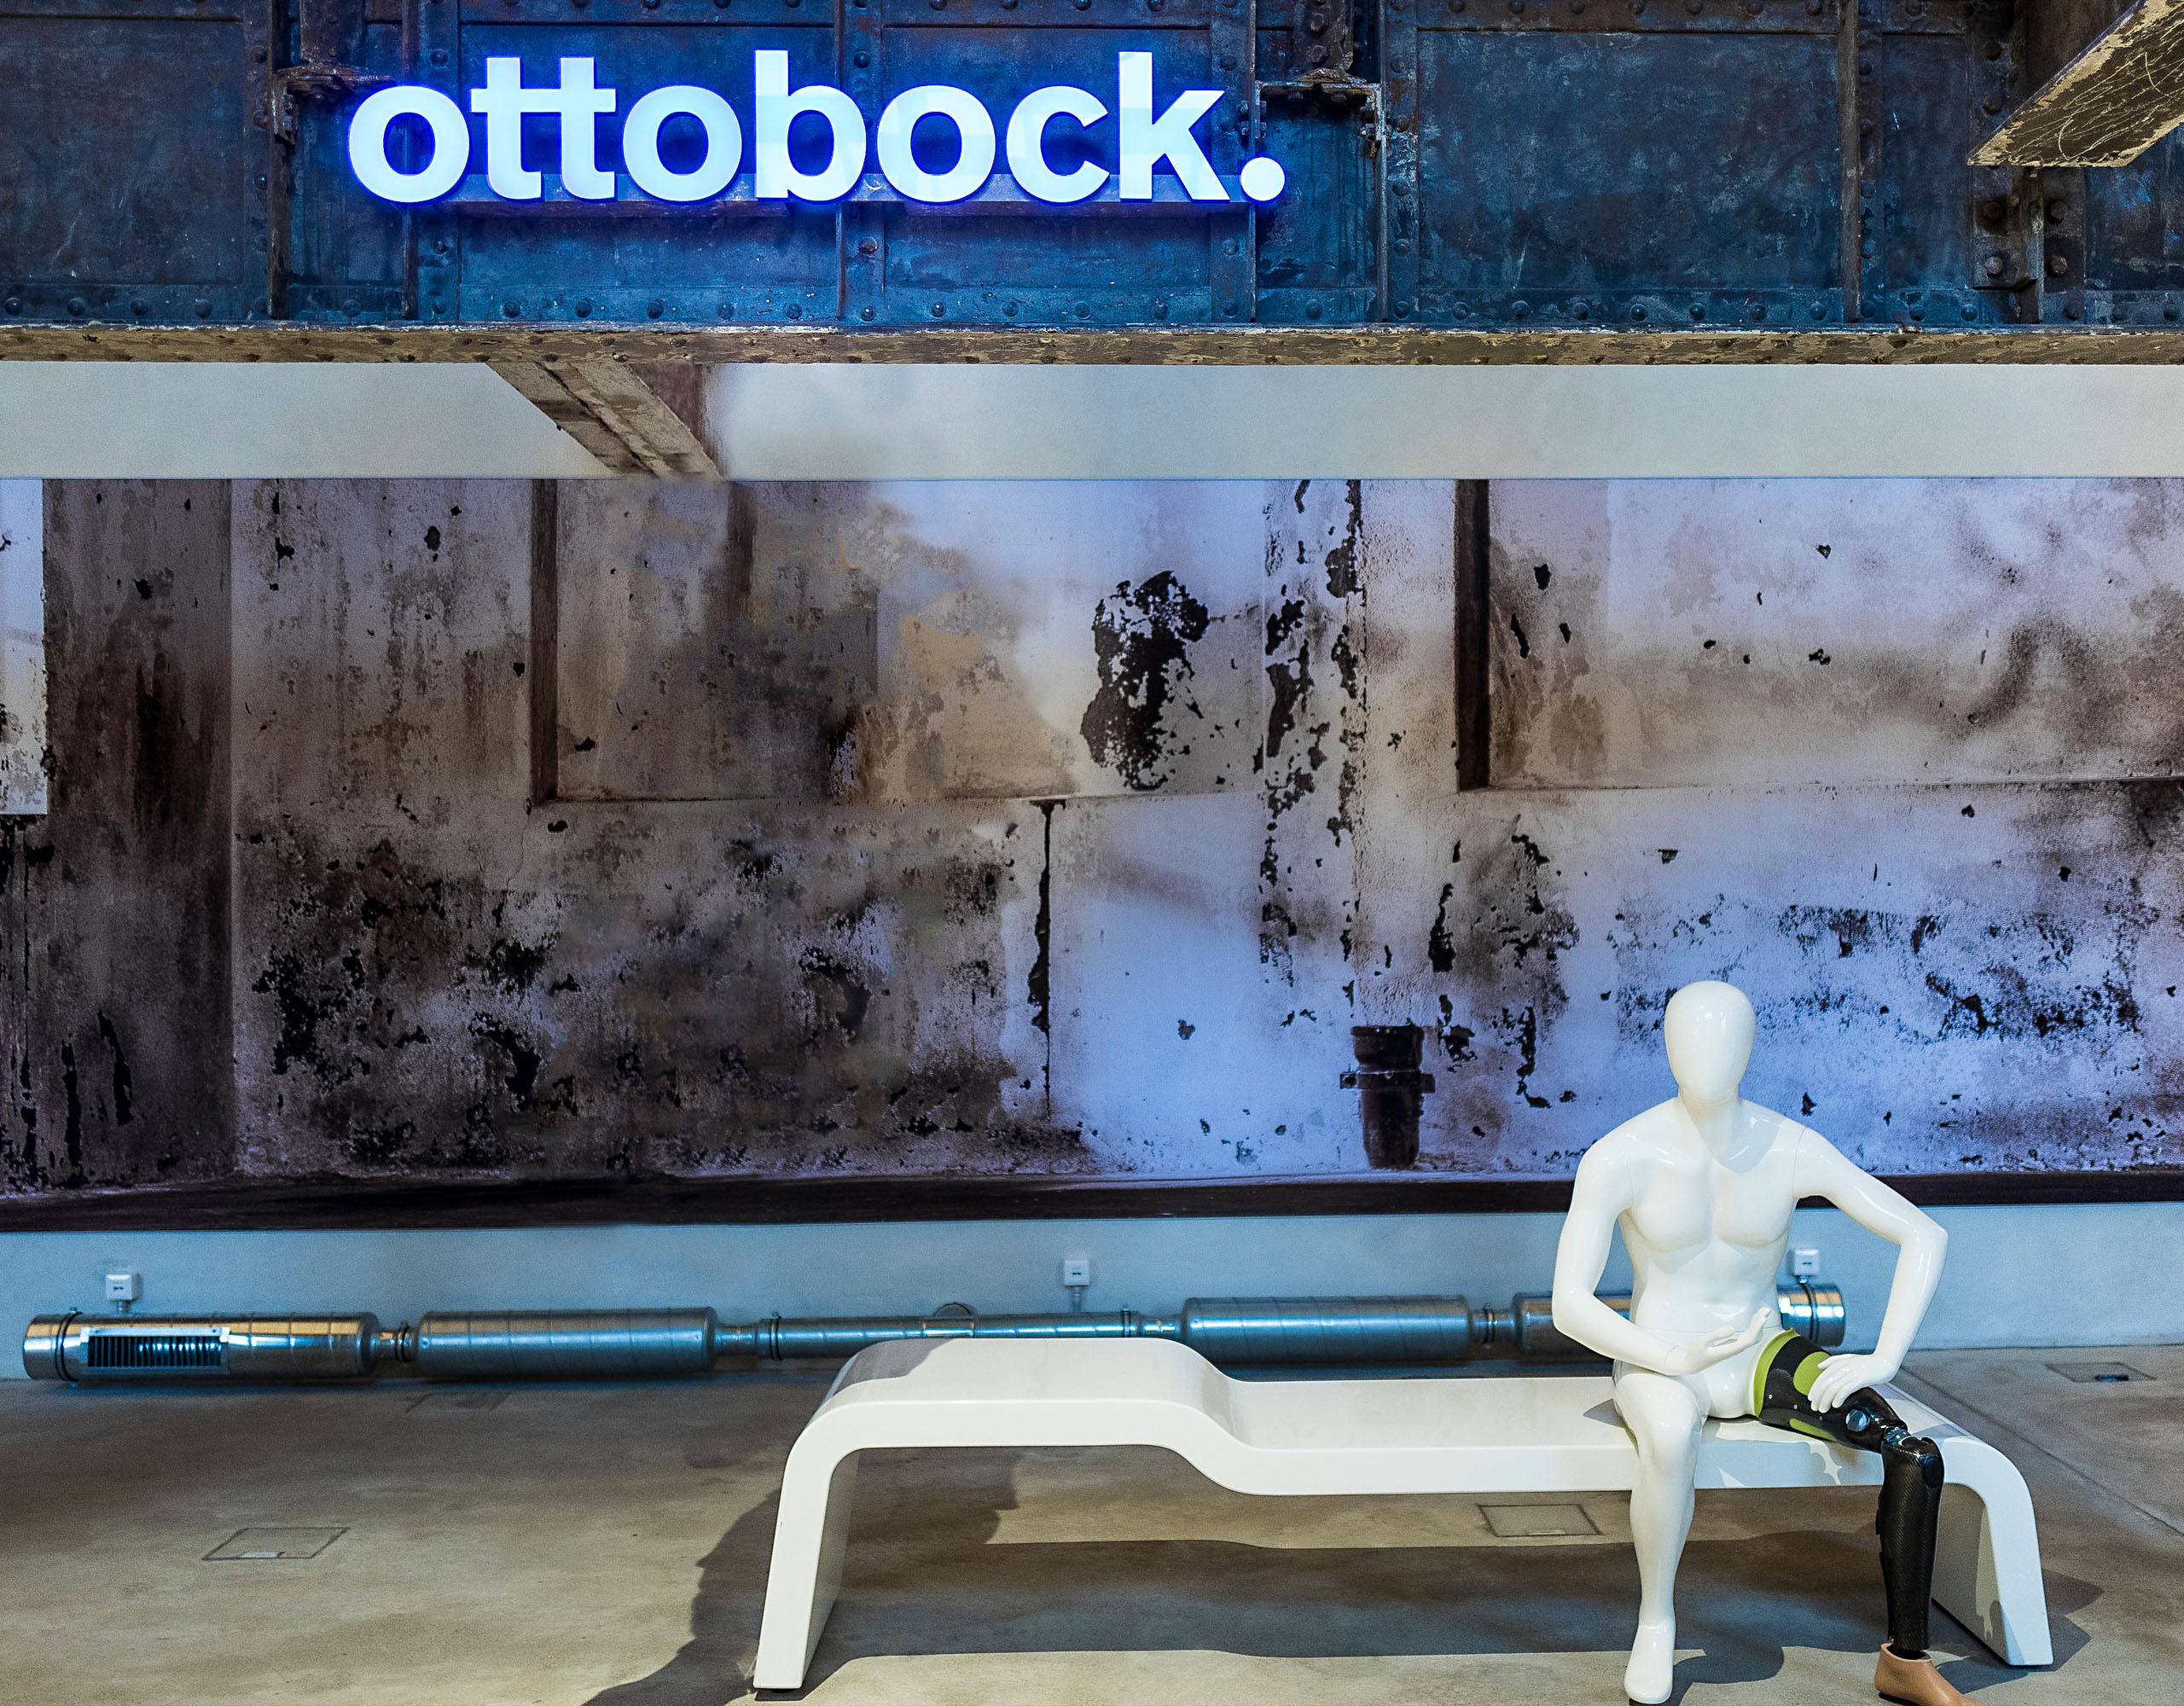 Weiße Skulptur mit Beinprothese auf einer Bank vor bläulichem Hintergrund mit Leuchtschrift "Ottobock"